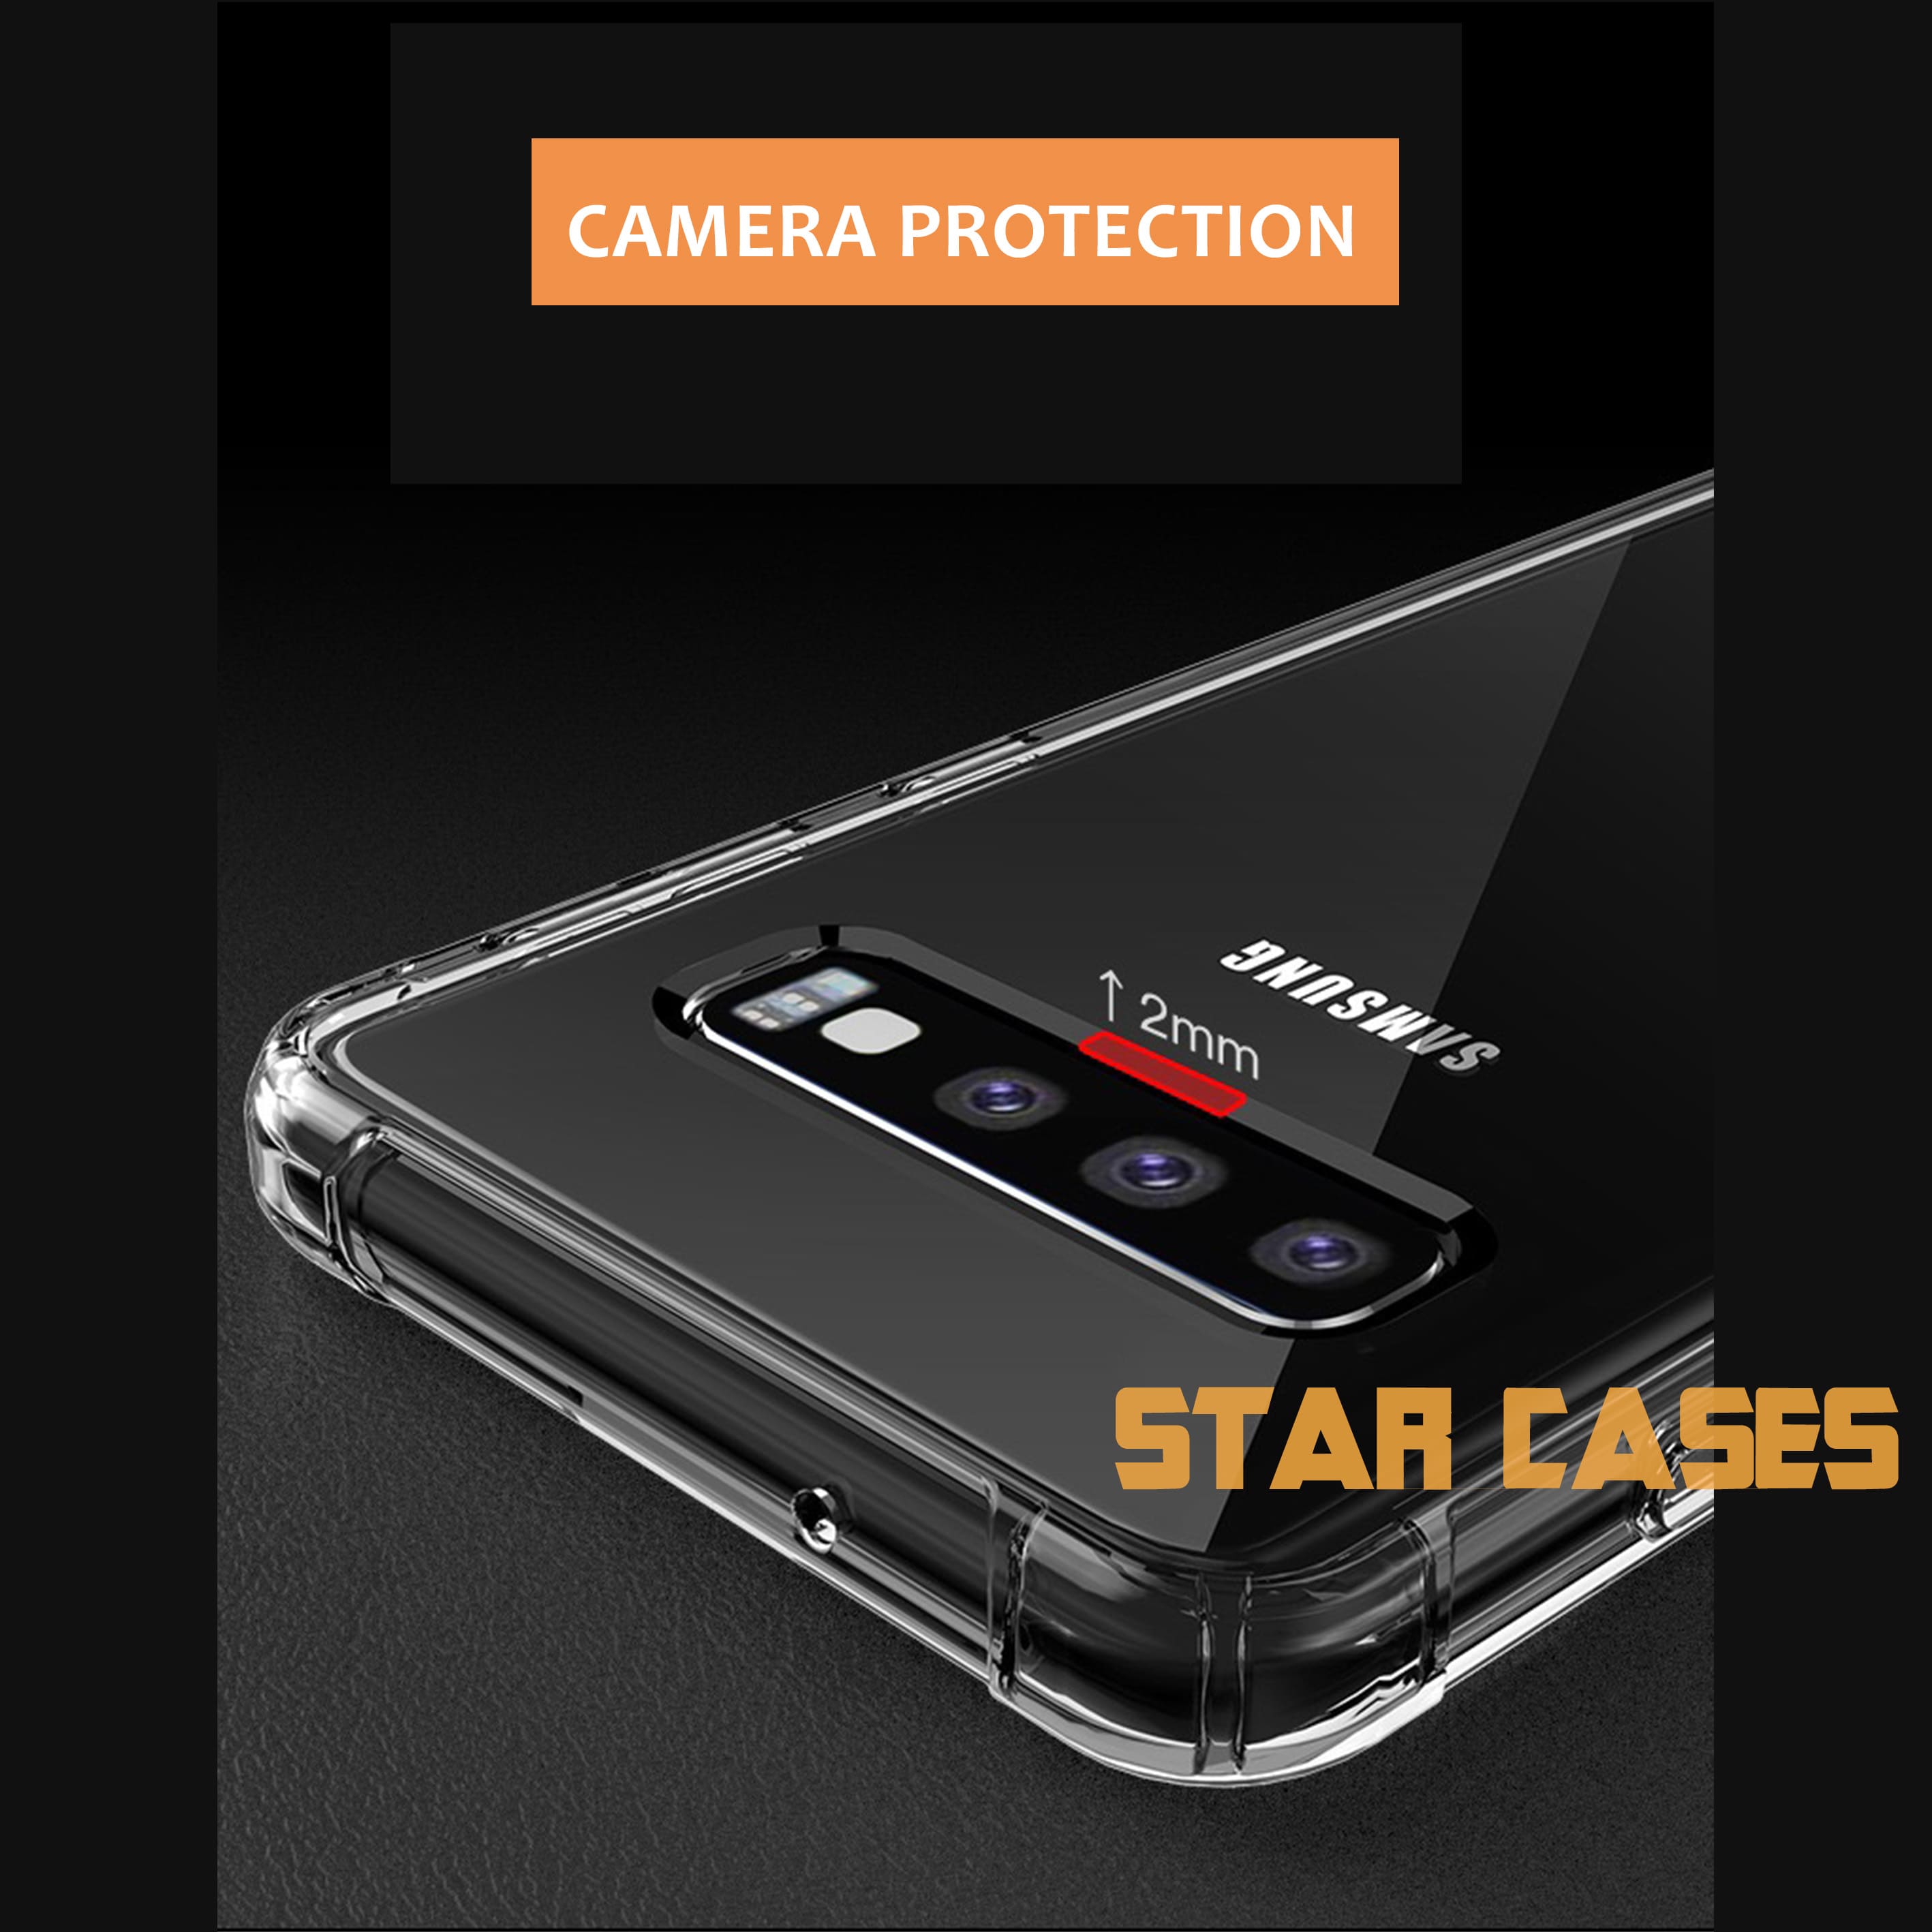 Samsung S20 Clear Soft Bumper Case